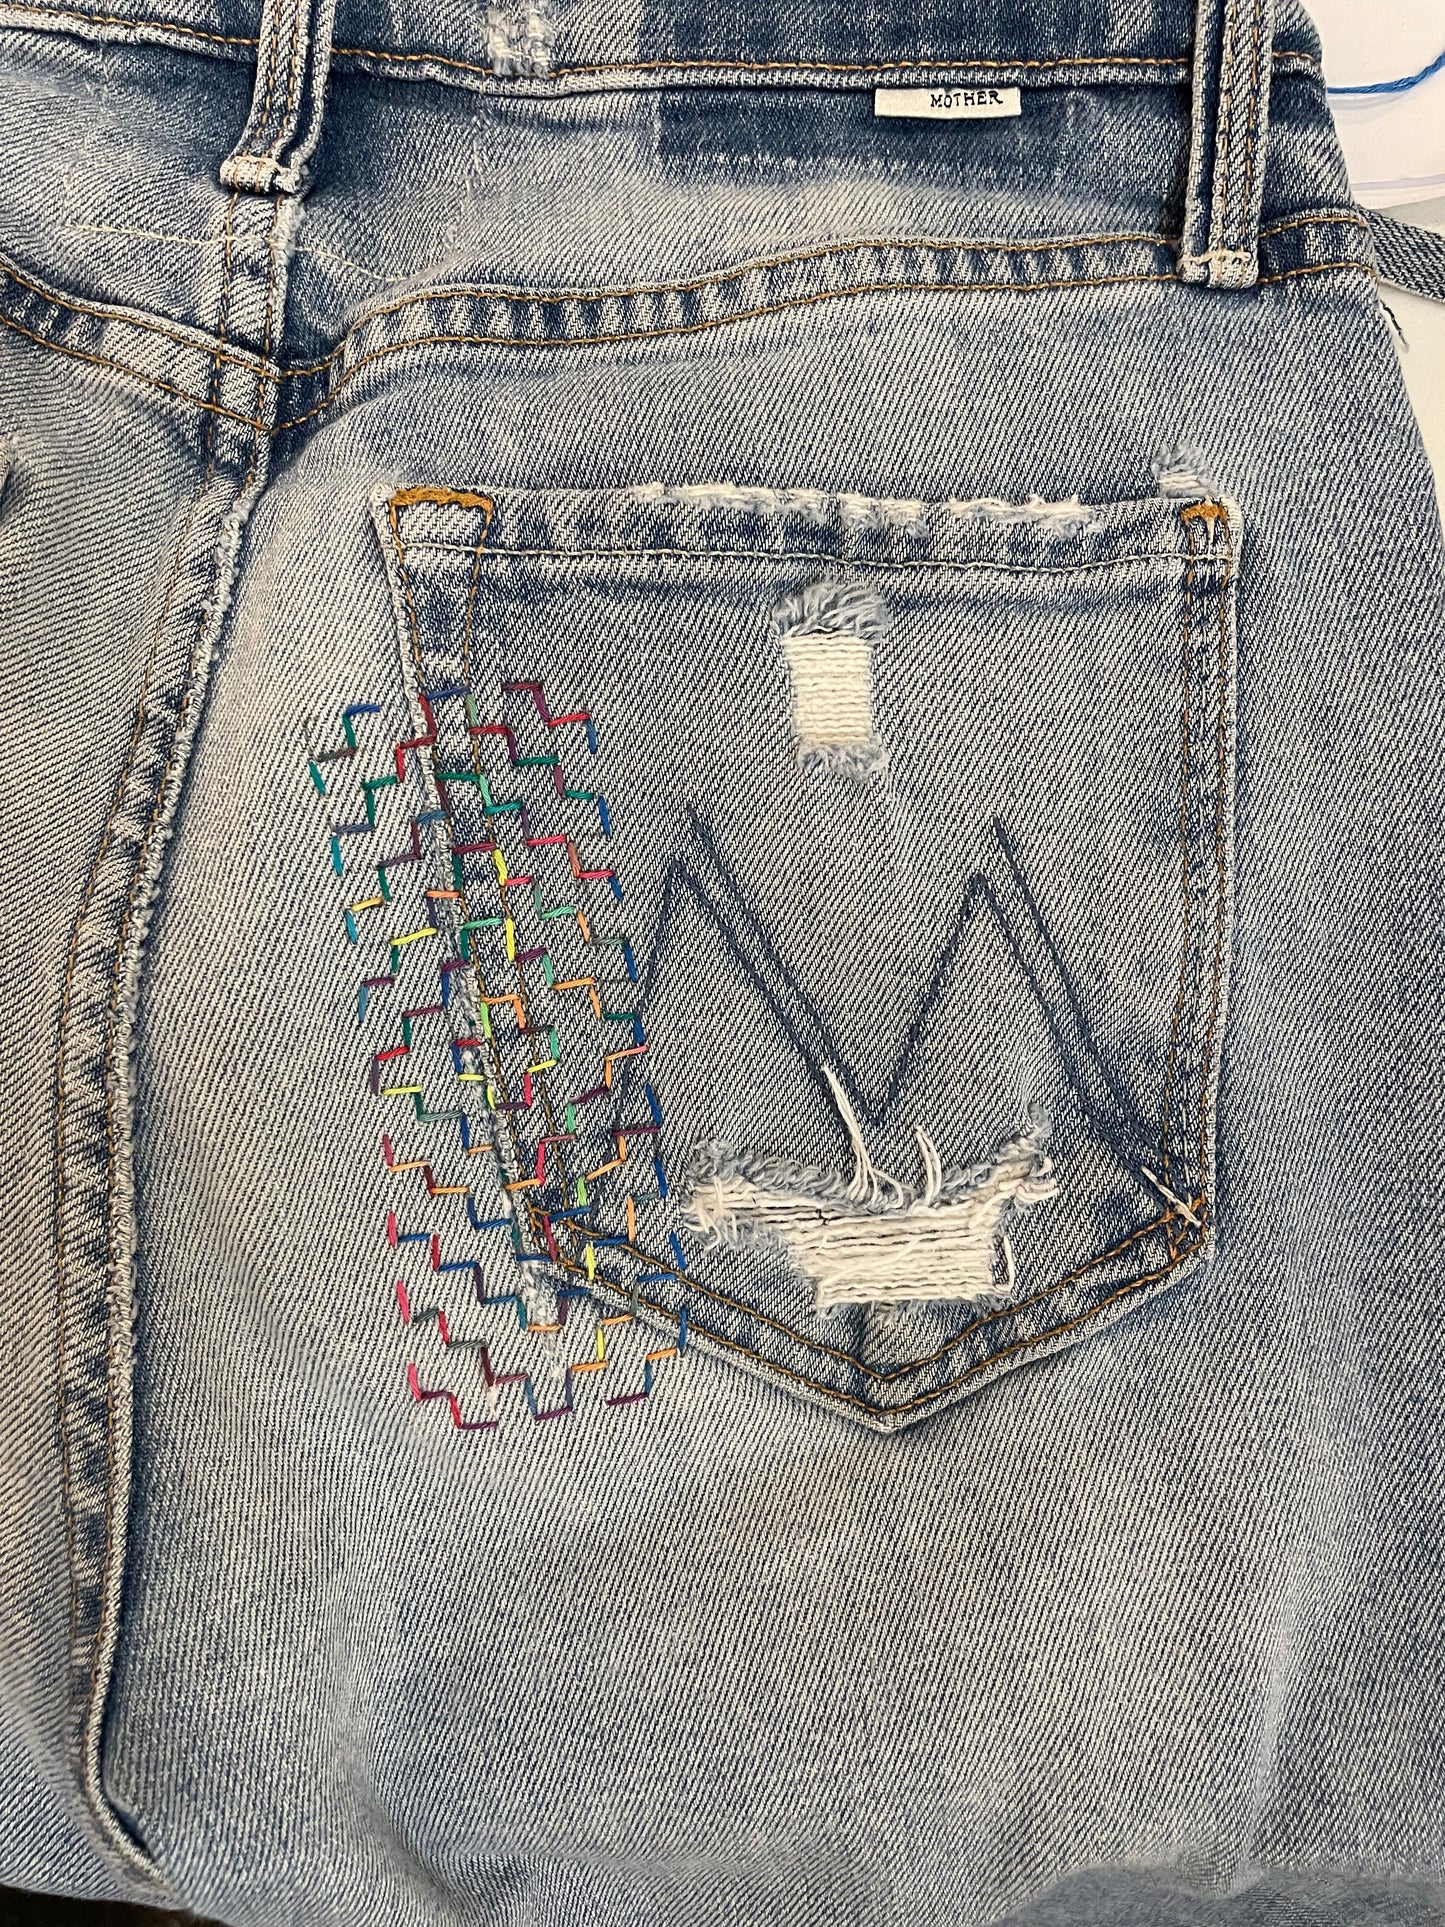 Intro To Sashiko Embroidery - 4/21/24